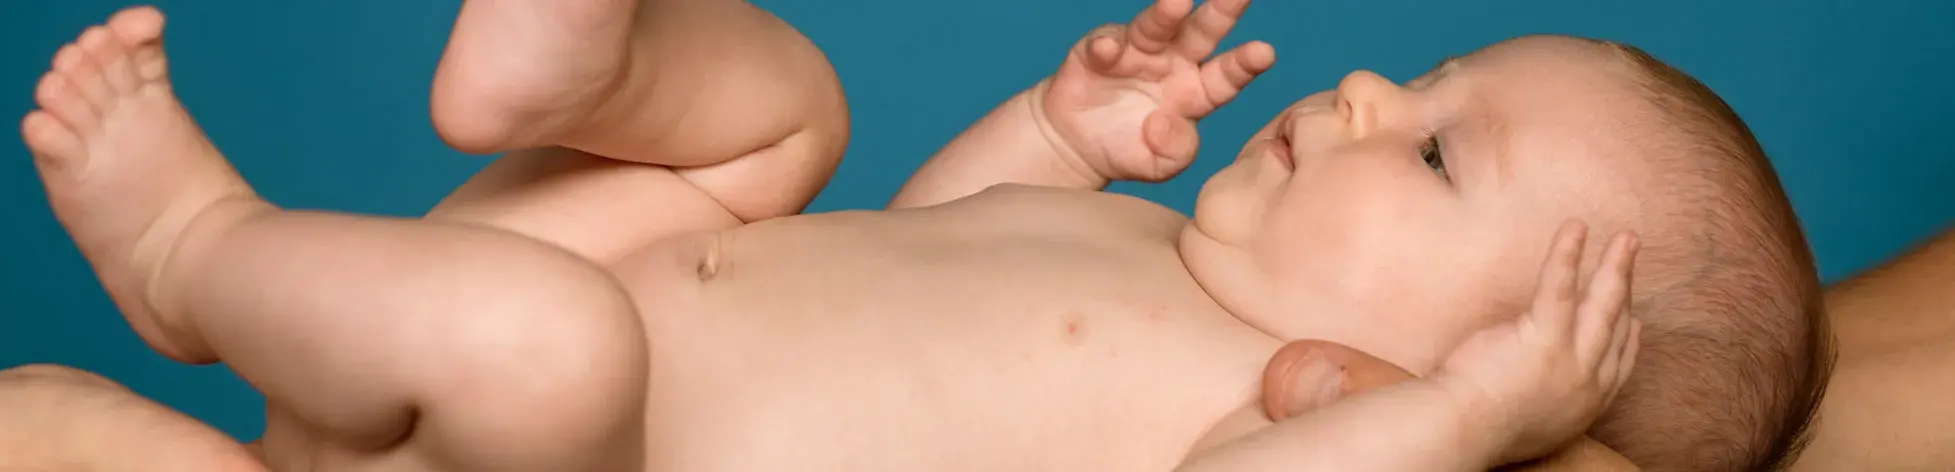 Botón que lleva a crecimiento de un bebe